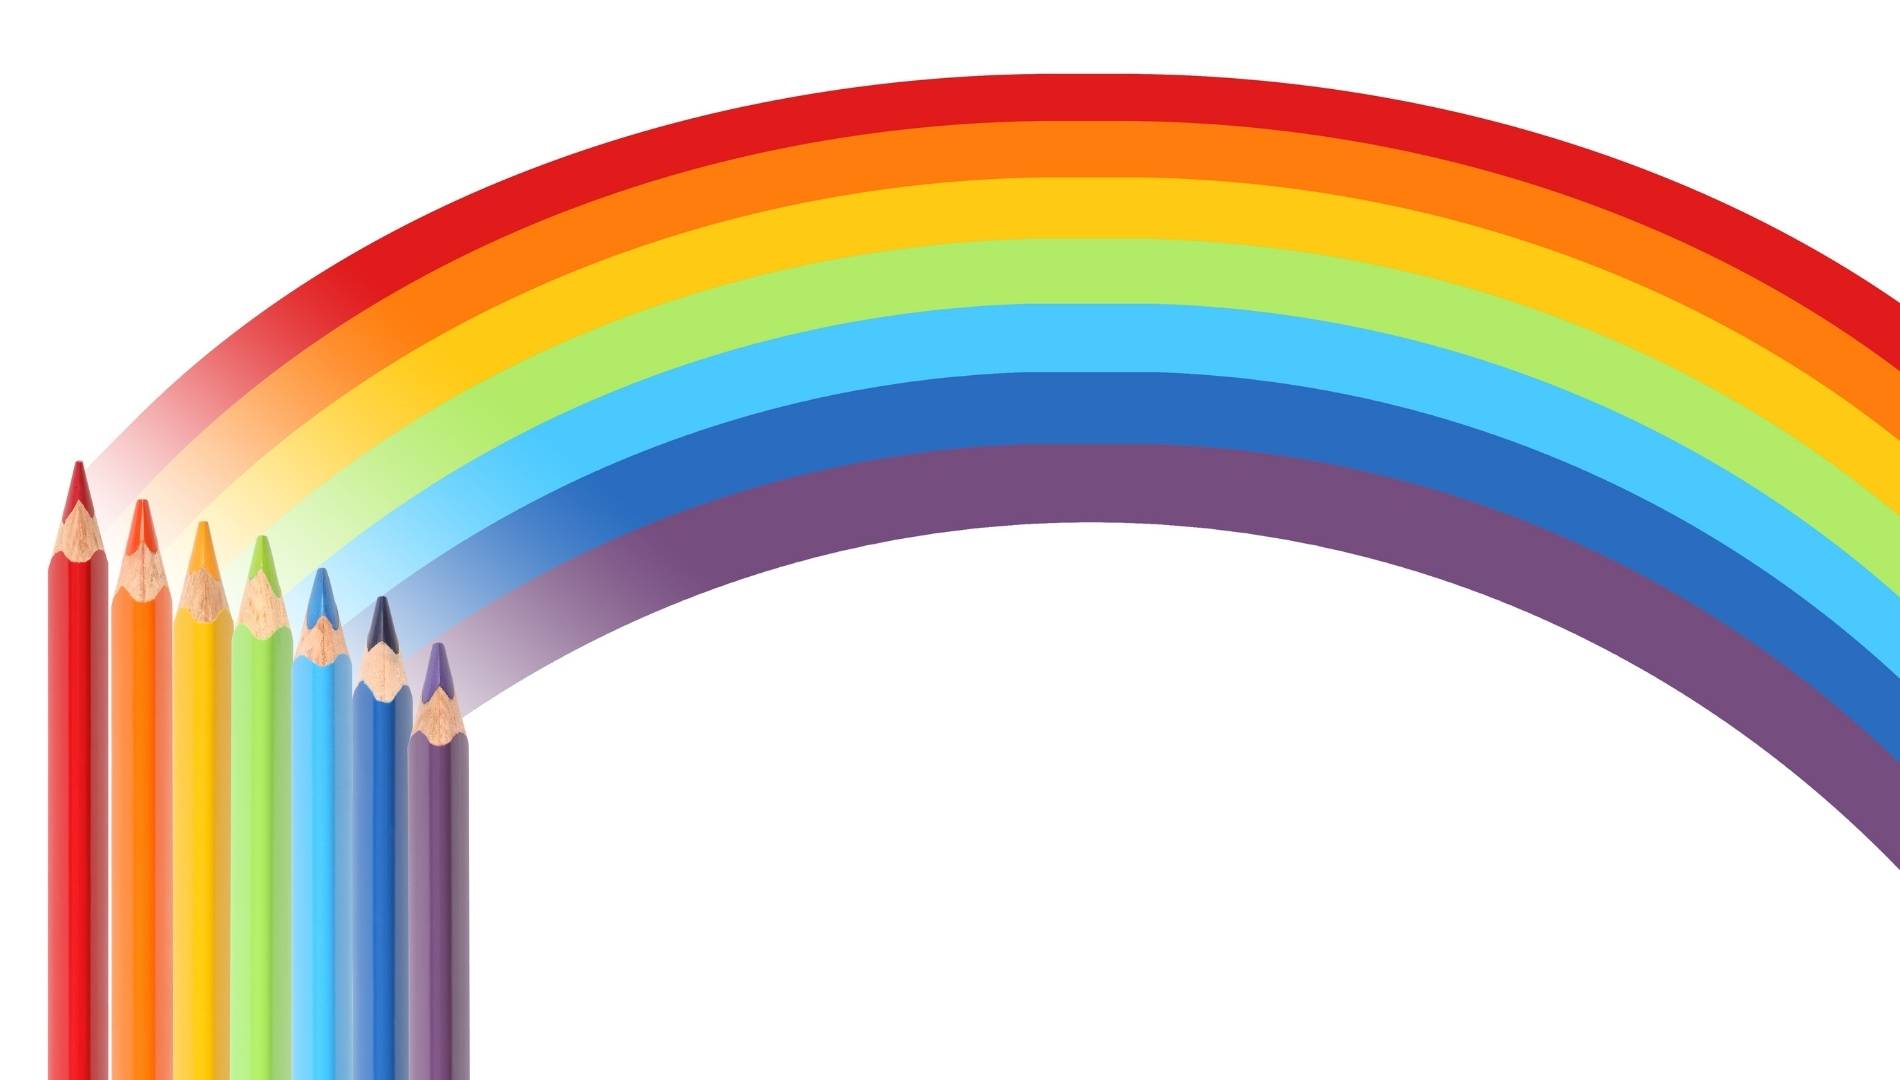 Racional Ruina Estereotipo Los 7 colores del arco iris y significado ⭐ Orden y explicación para niños